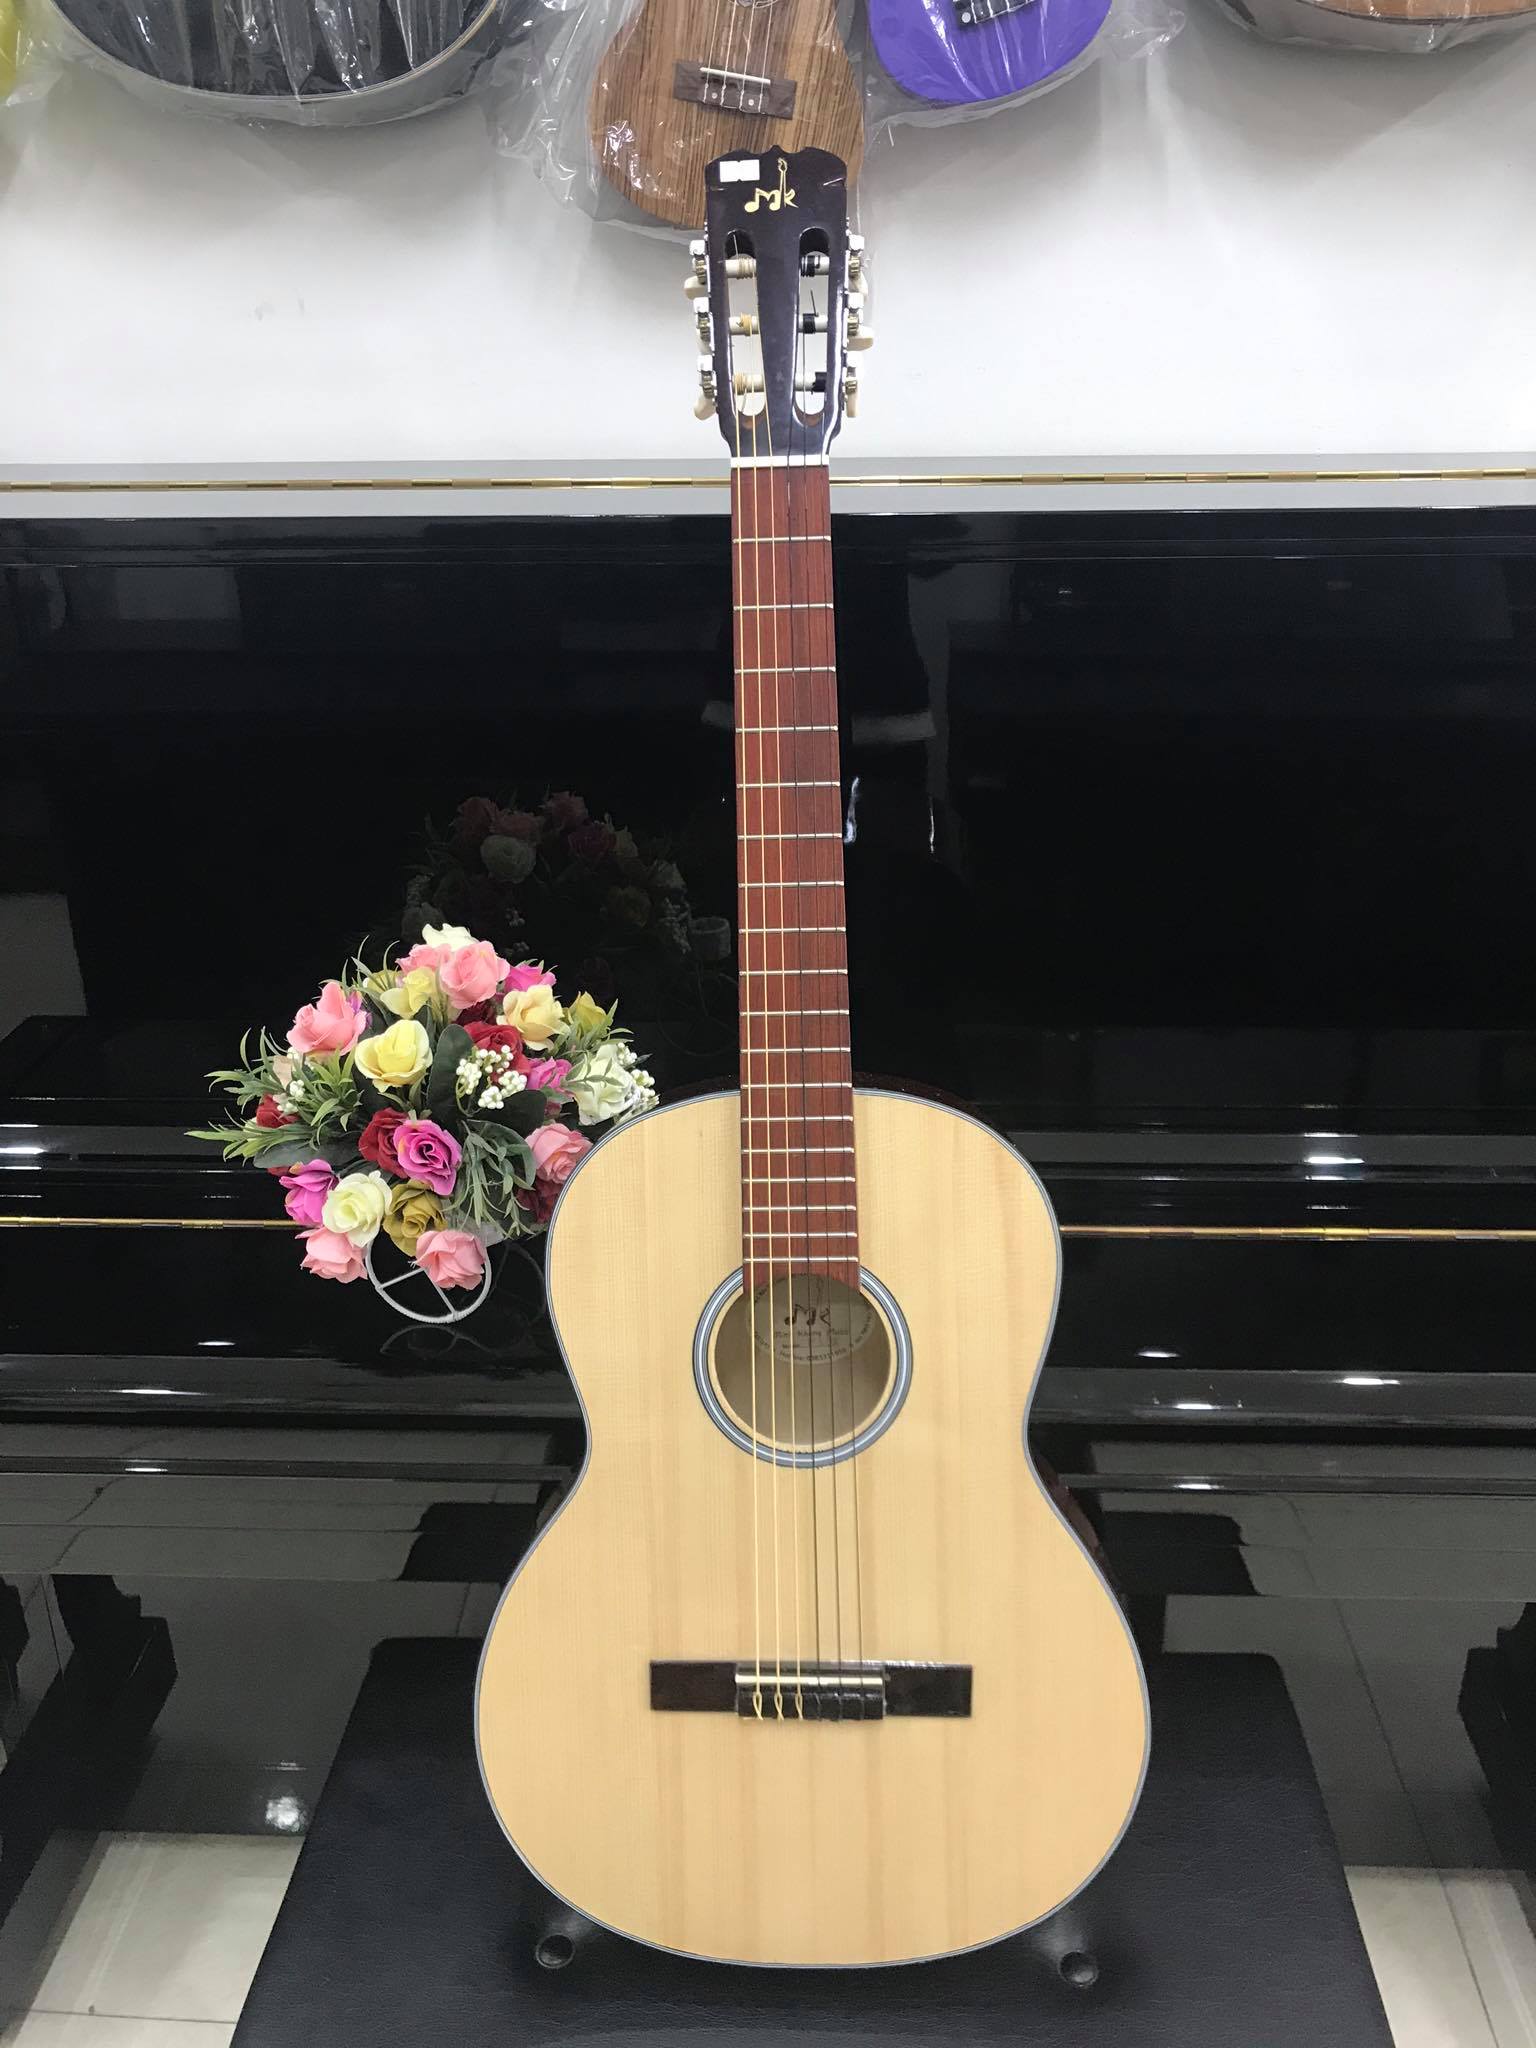 Đàn guitar Classic MKC95, thùng tròn, màu vân gỗ, Việt Nam, kèm bao da 2 lớp, bộ dây